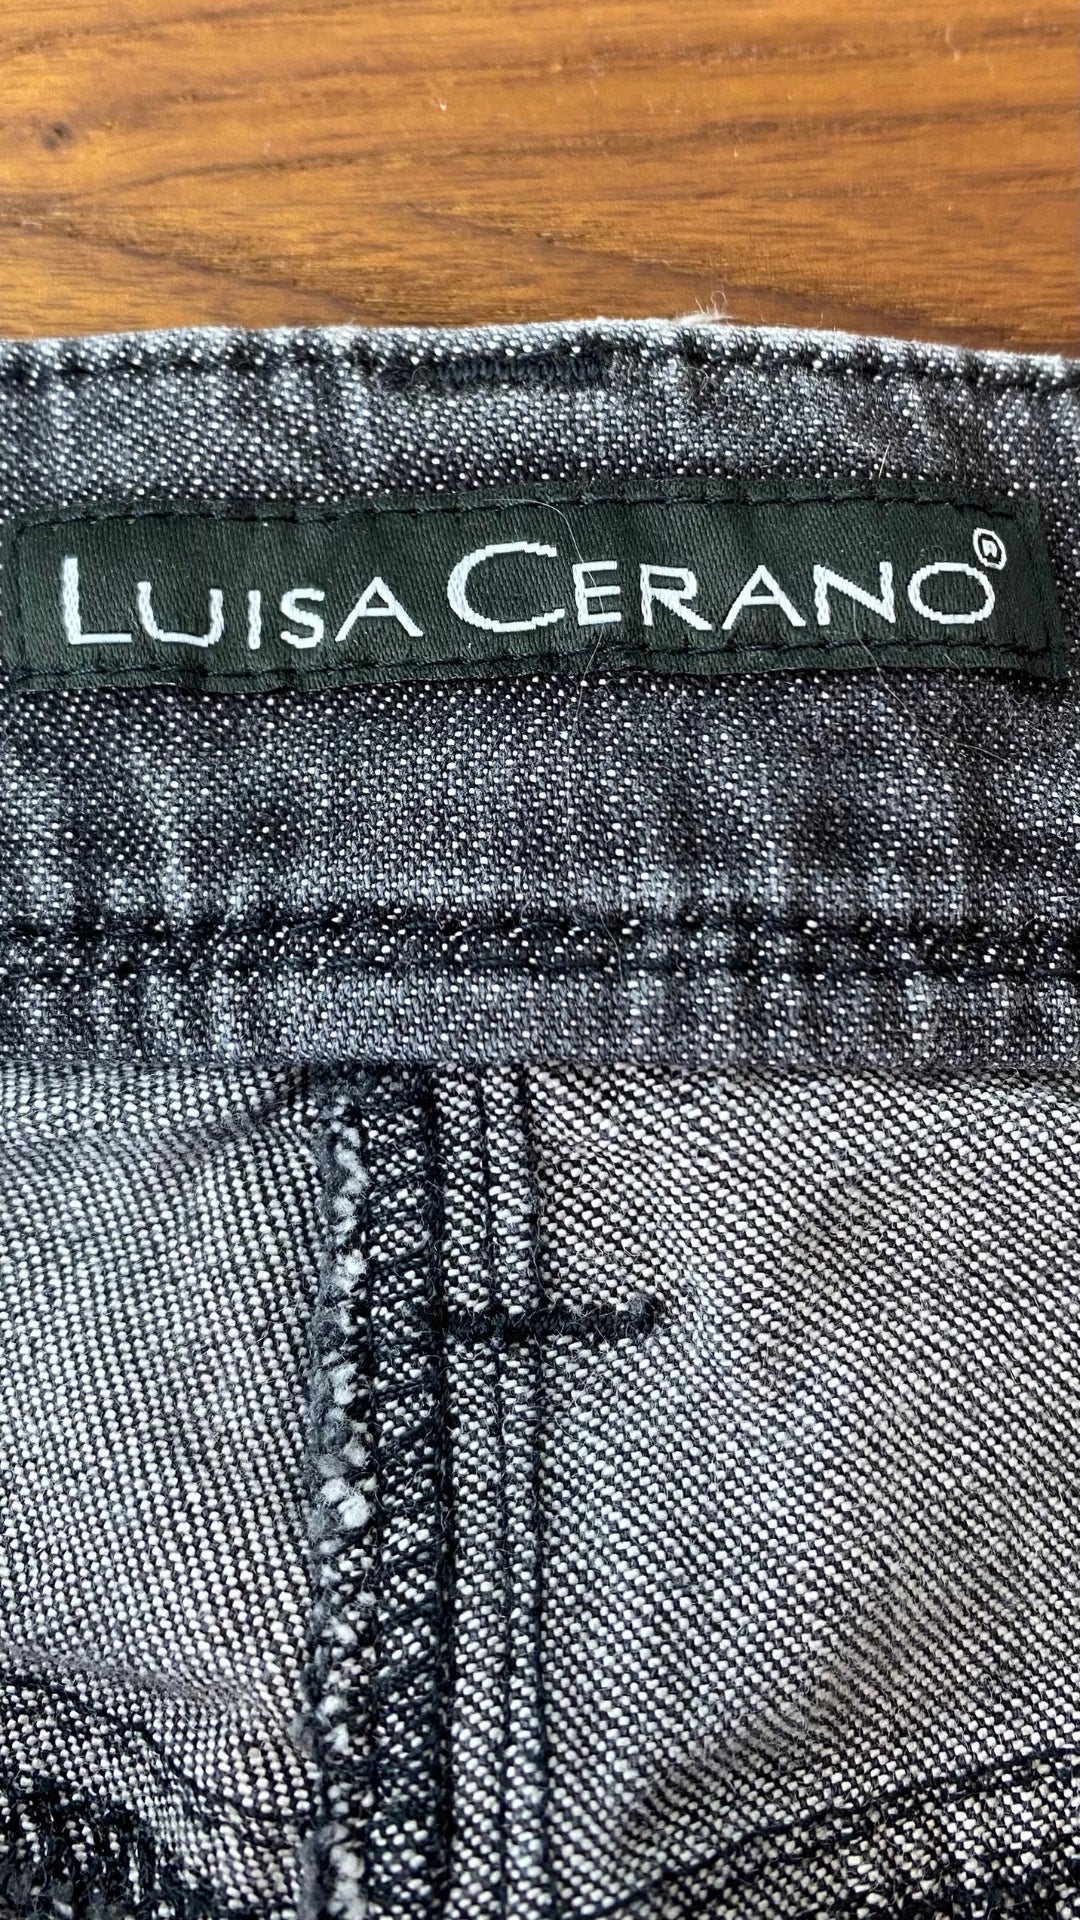 Jeans gris délavé à jambe large Luisa Cerano, taille 10. Vue de l'étiquette de marque.